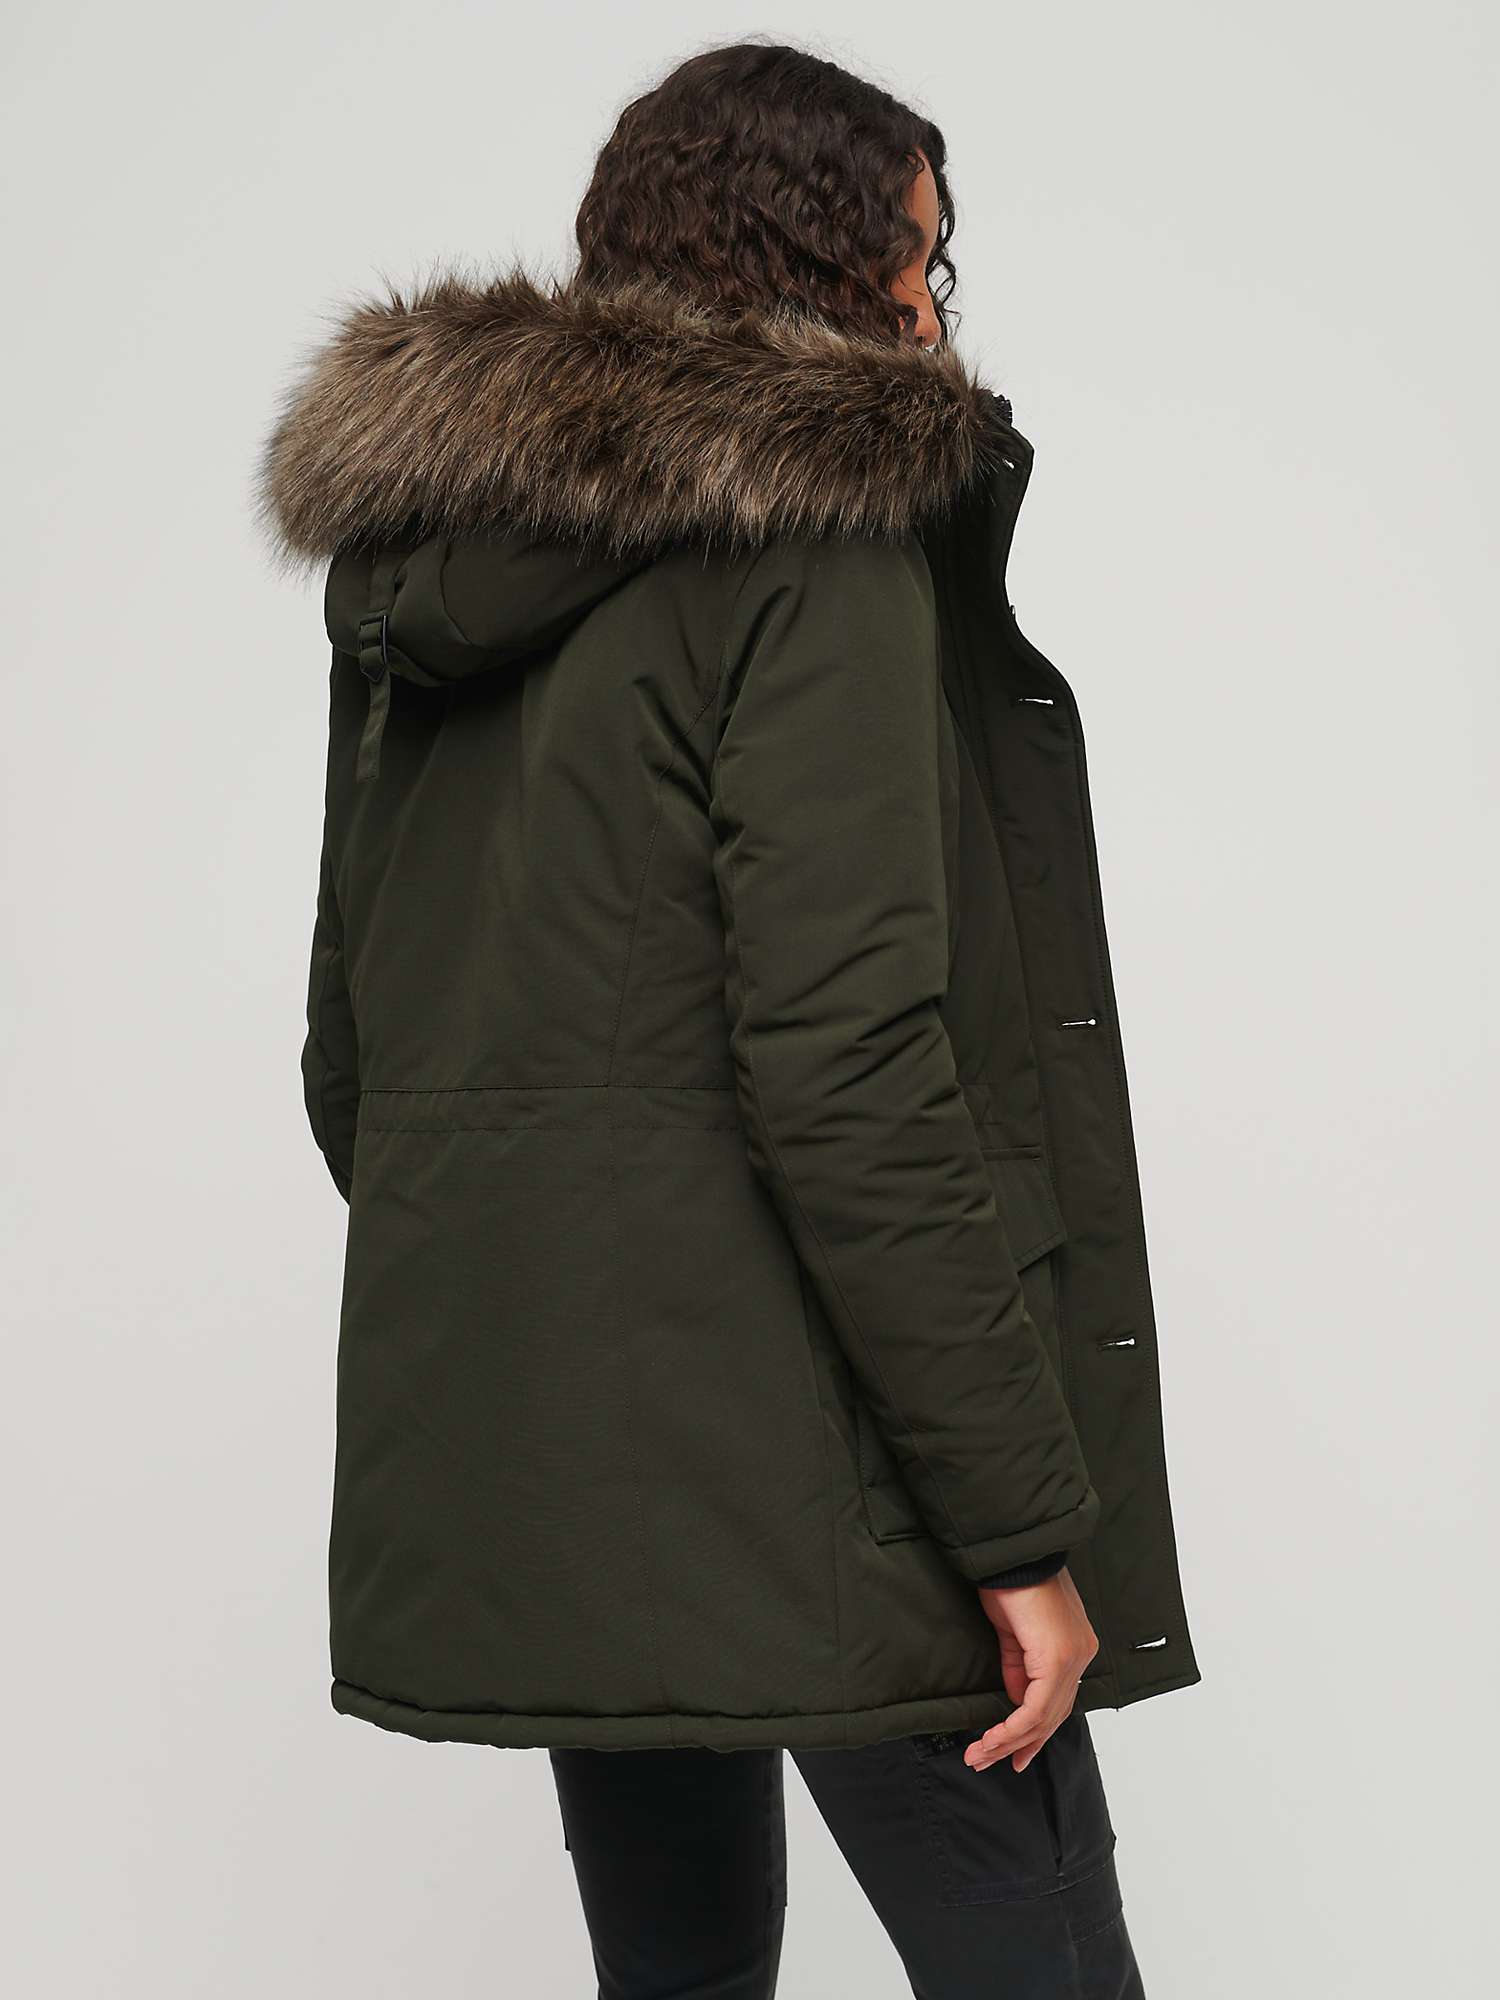 Buy Superdry Everest Faux Fur Hooded Parka Coat, Khaki Online at johnlewis.com